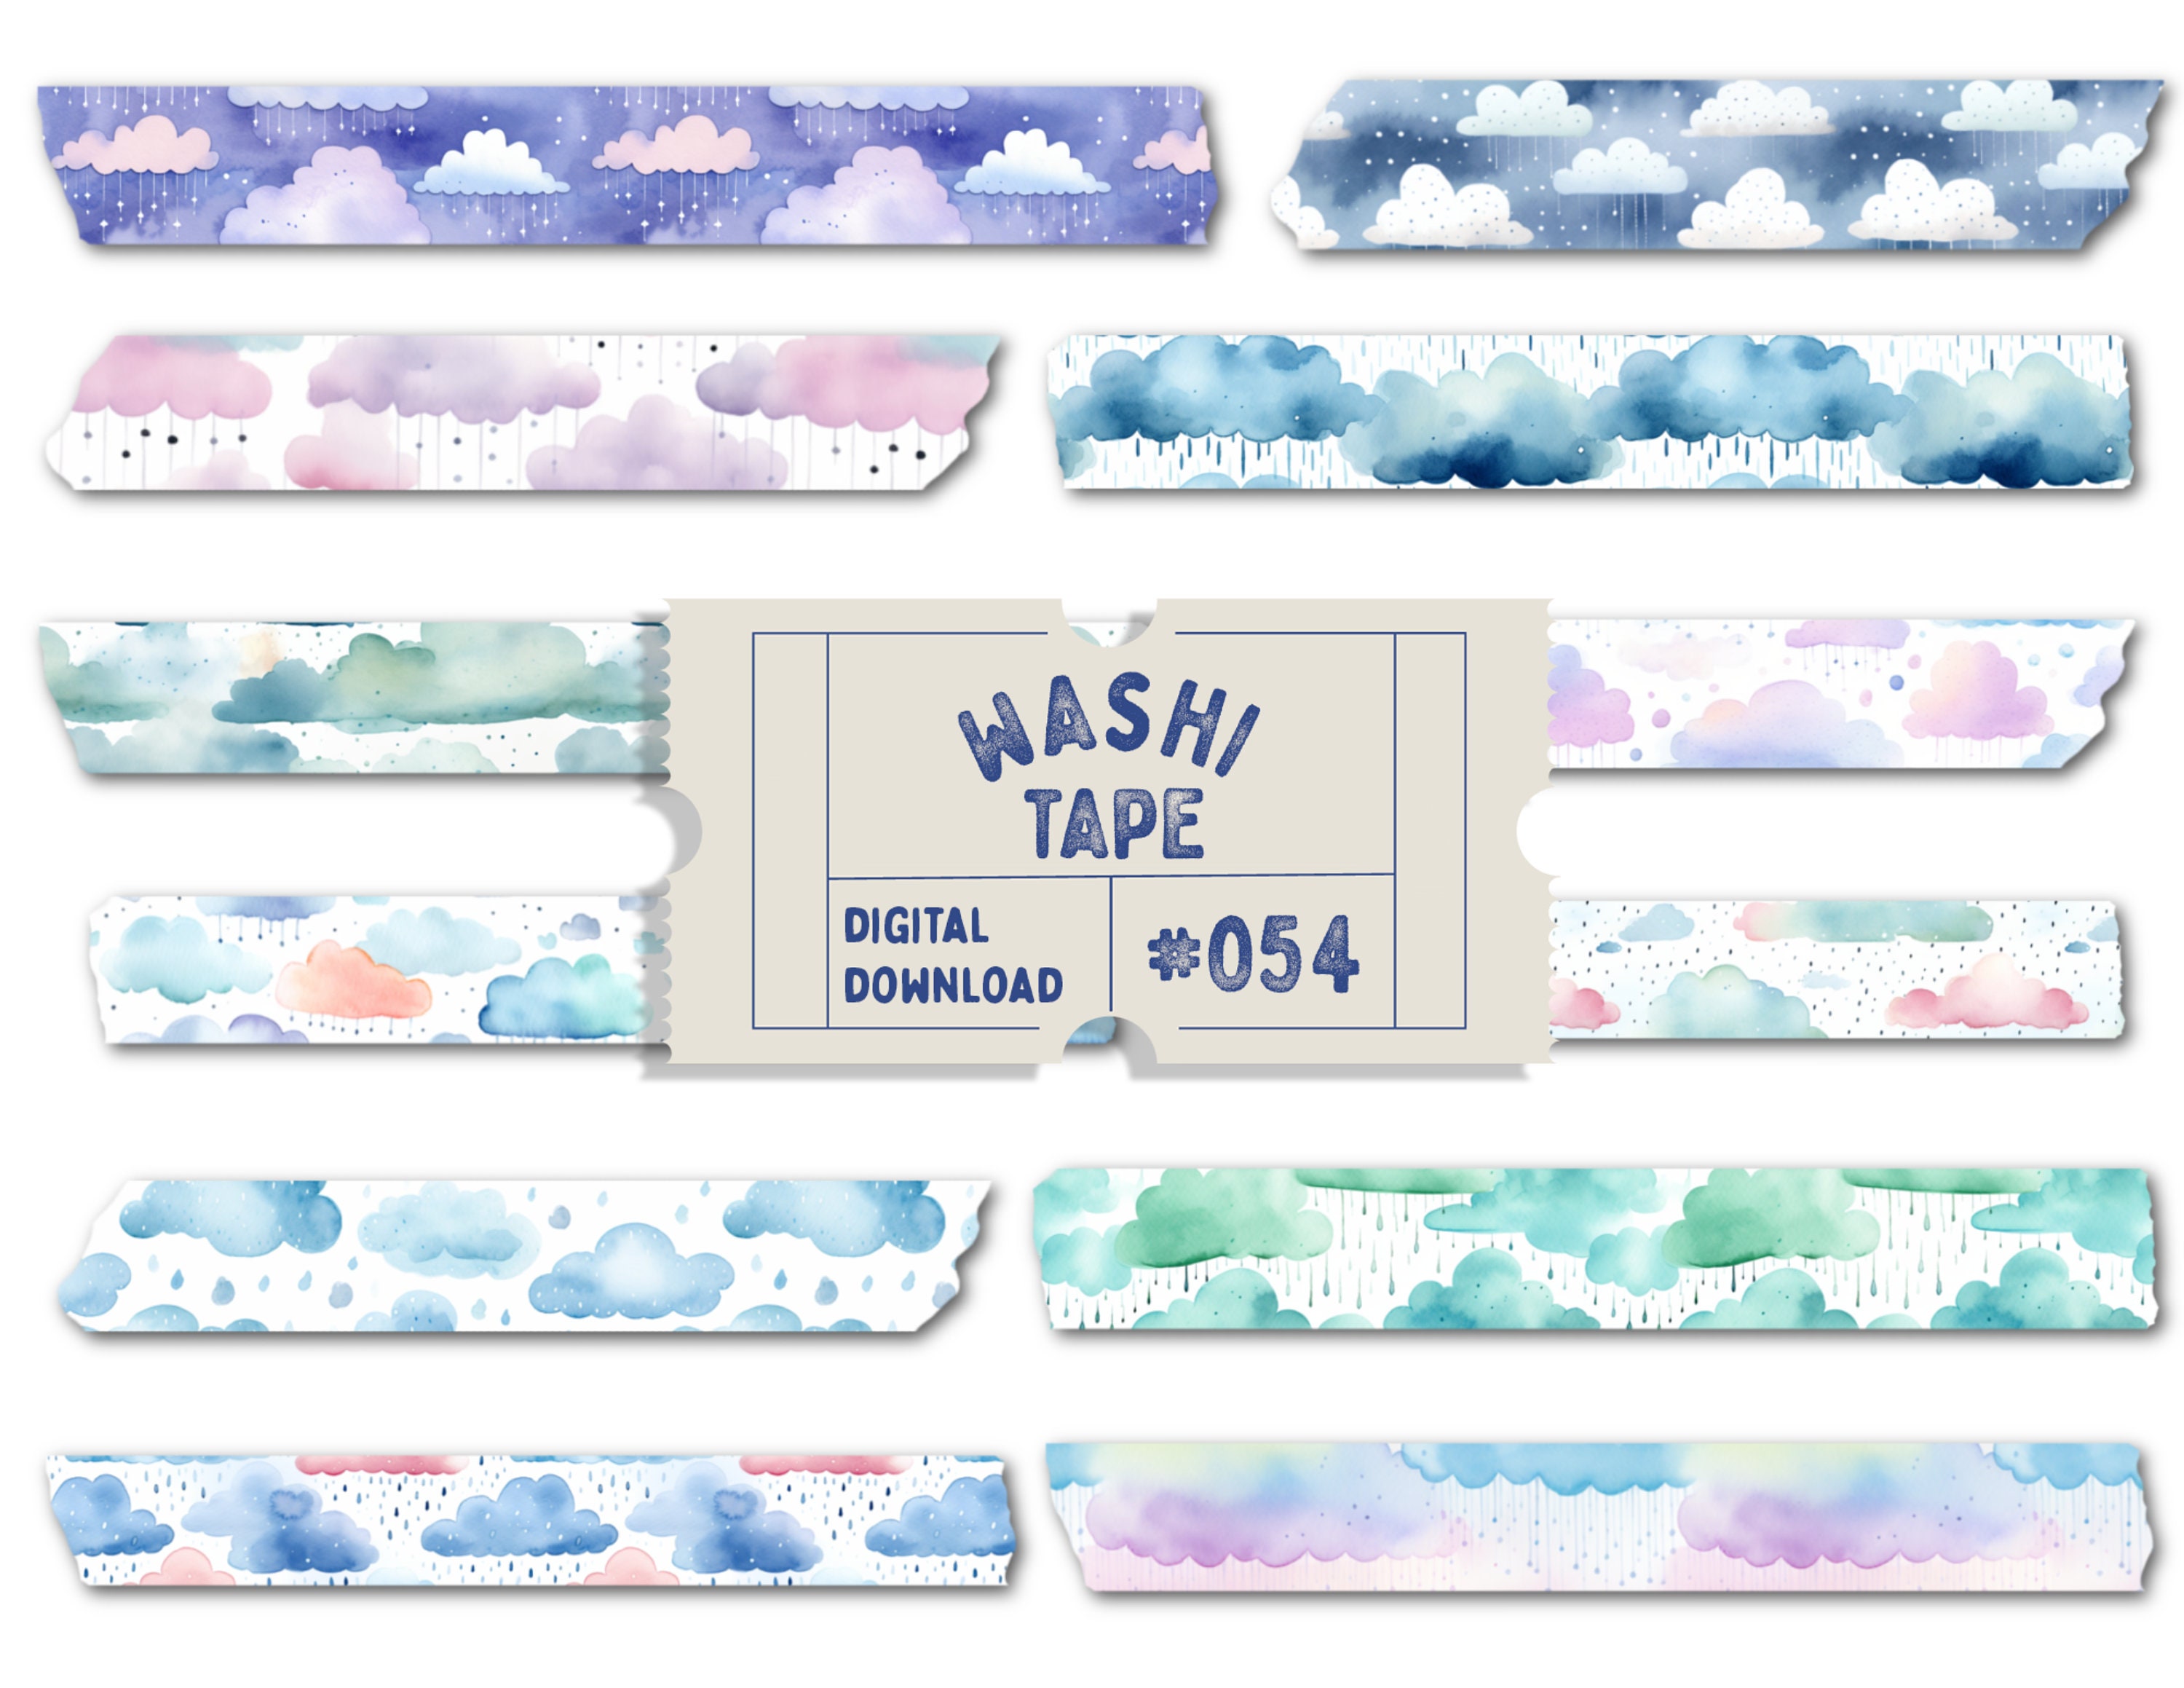 Cute Washi Tape PNG Image, Cute Brown Washi Tape Collection, Washi, Tape,  Washitape PNG Image For Free Download